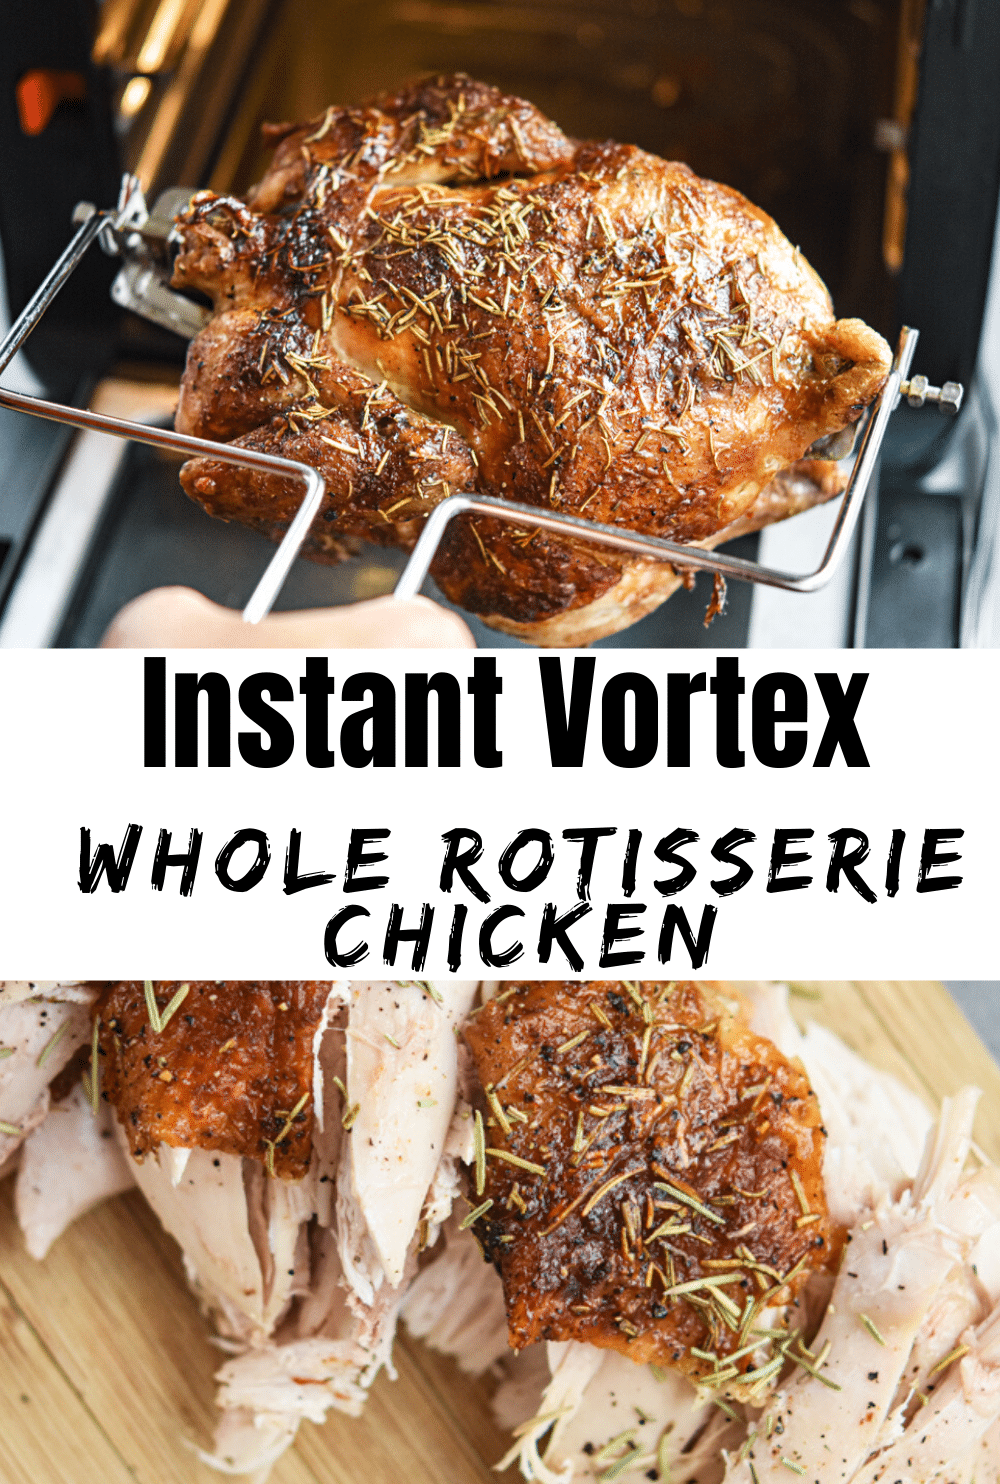 Instant Vortex Whole Rotisserie Chicken